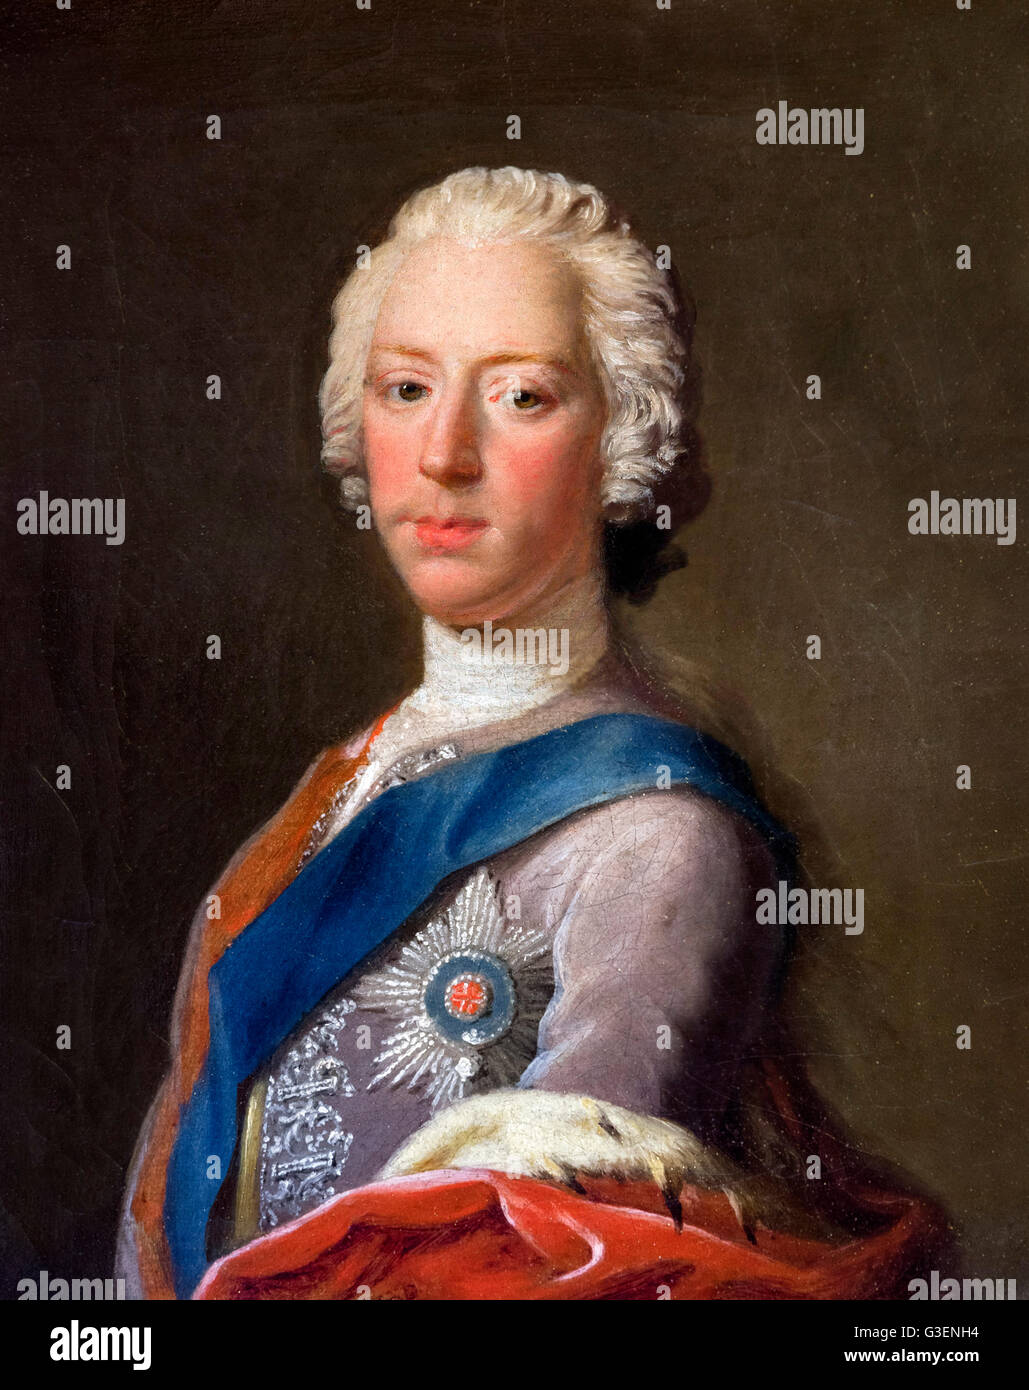 Bonnie Prince Charlie ritratto. Il principe Charles Edward Stuart (1720-1788), la pittura di Allan Ramsay, olio su tela, c.1745. Foto Stock